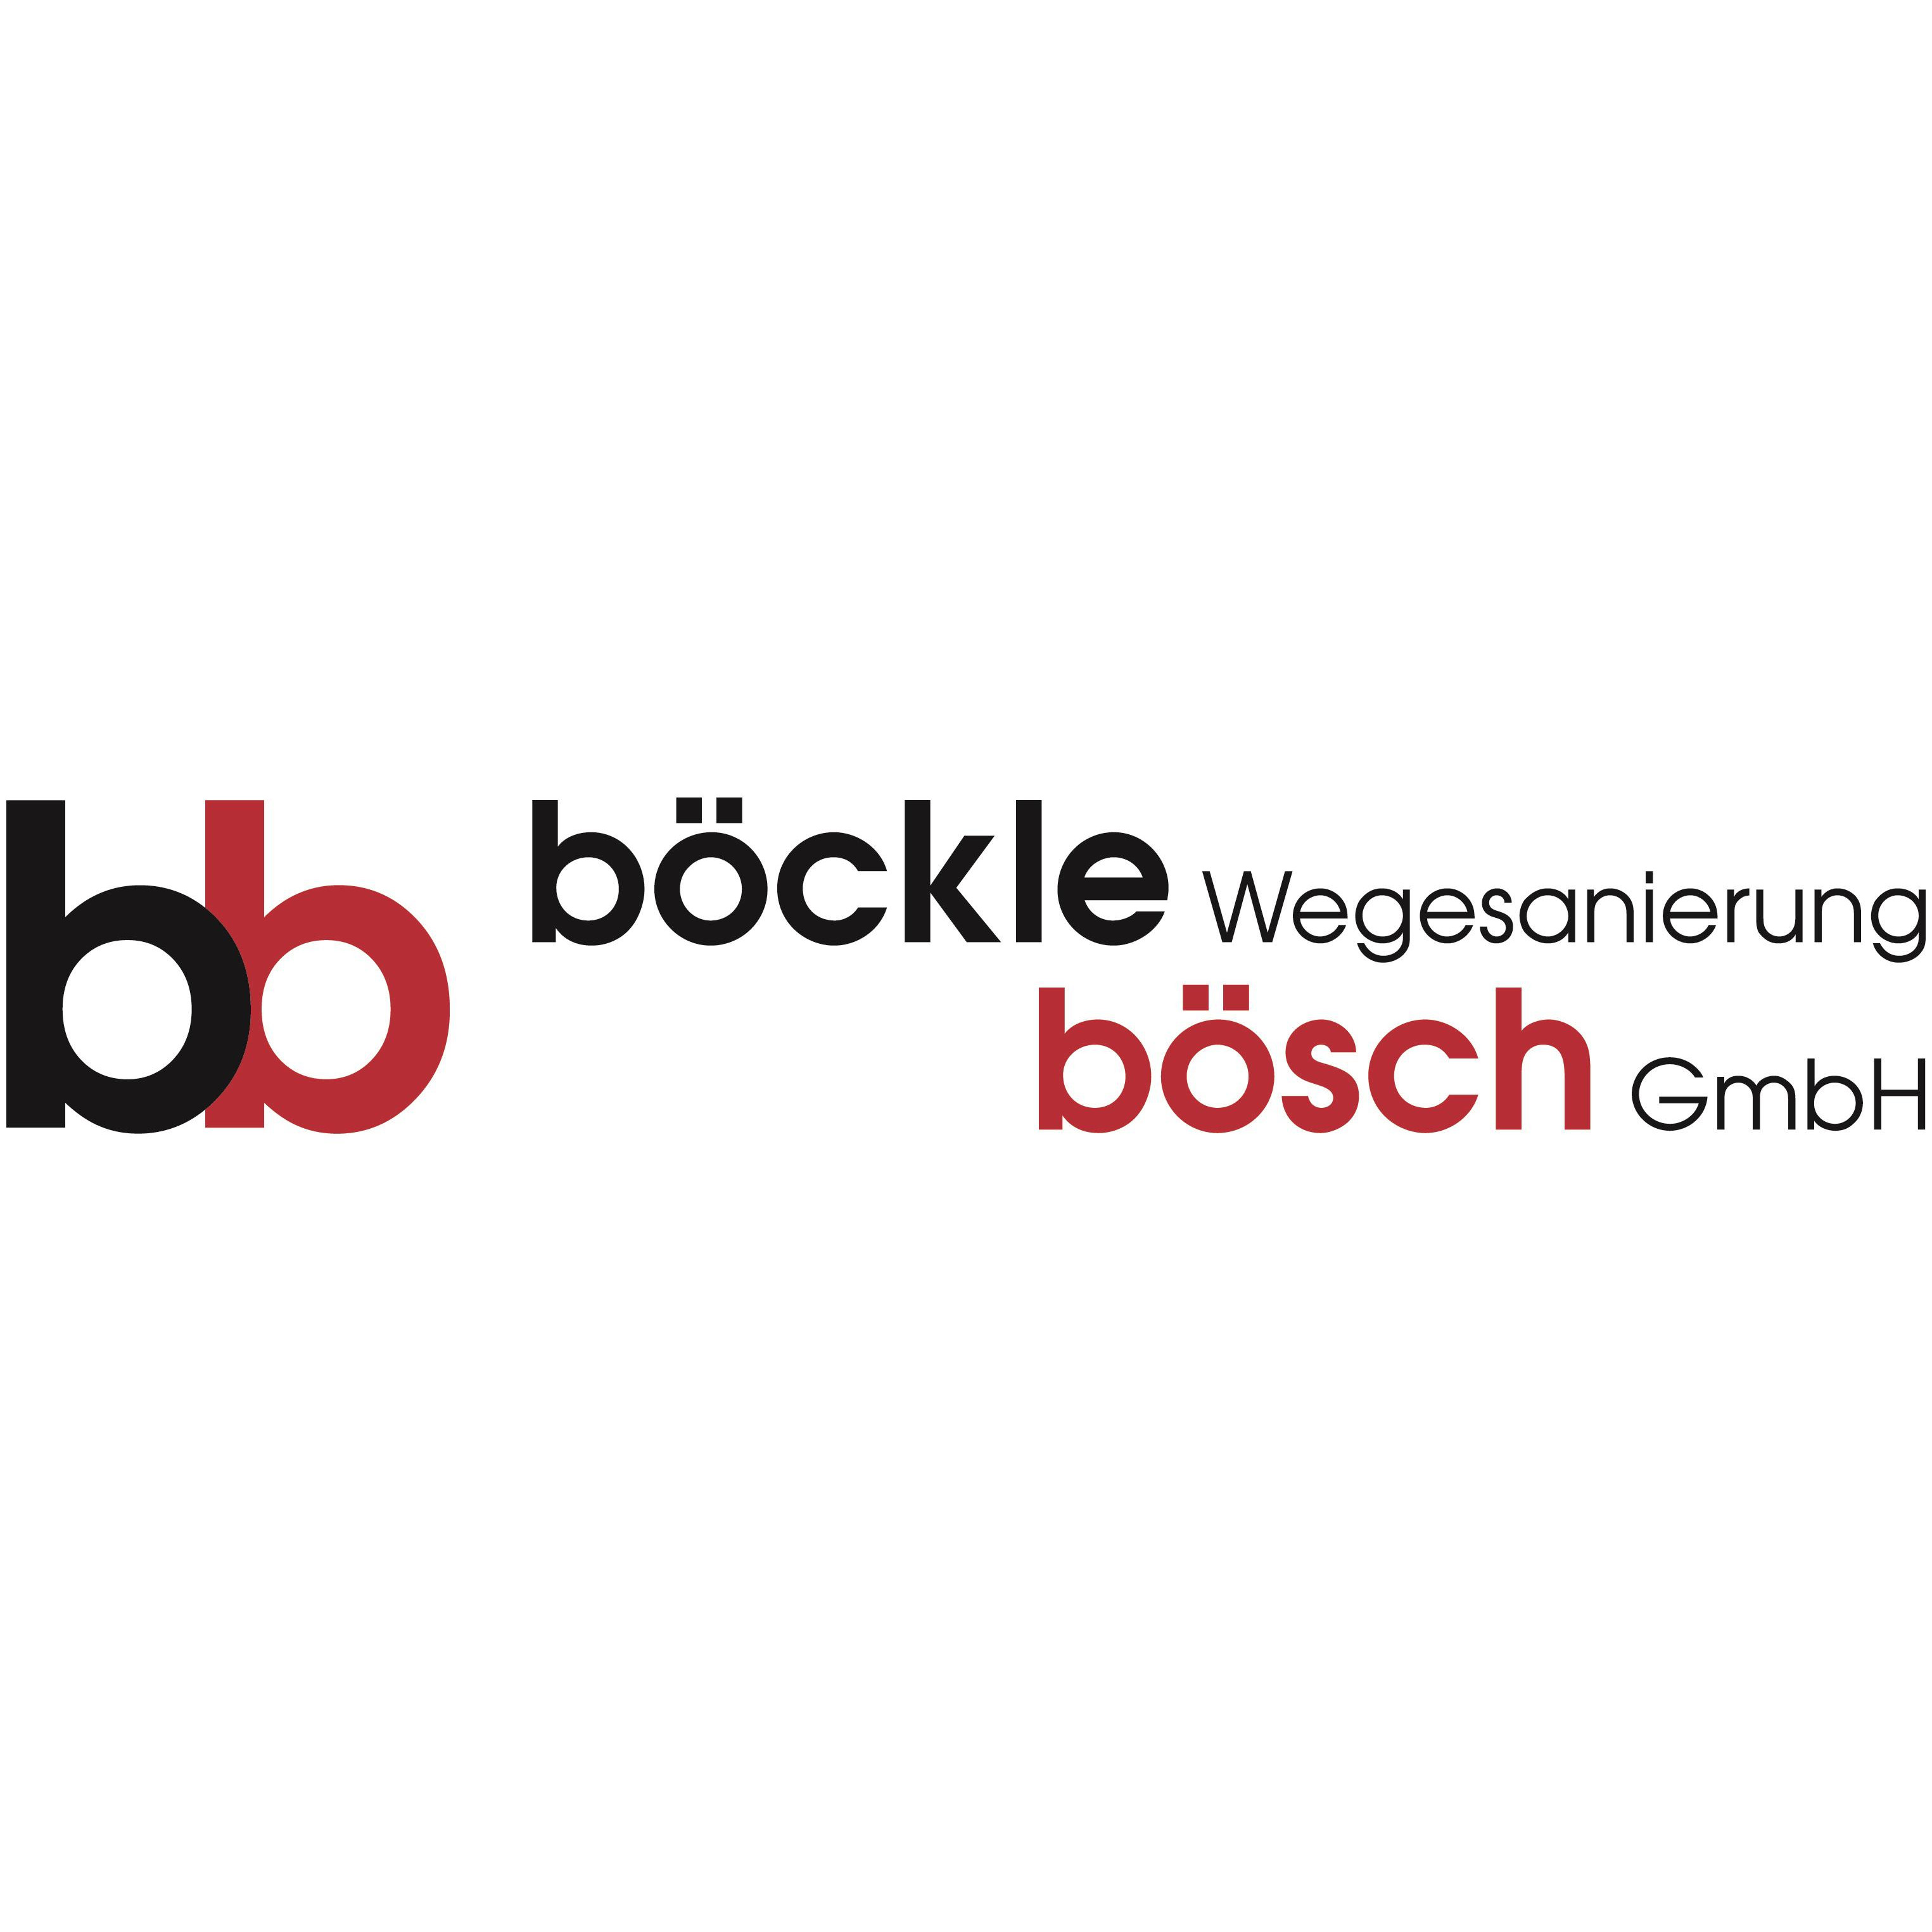 BÖCKLE Wegesanierung BÖSCH GmbH Logo